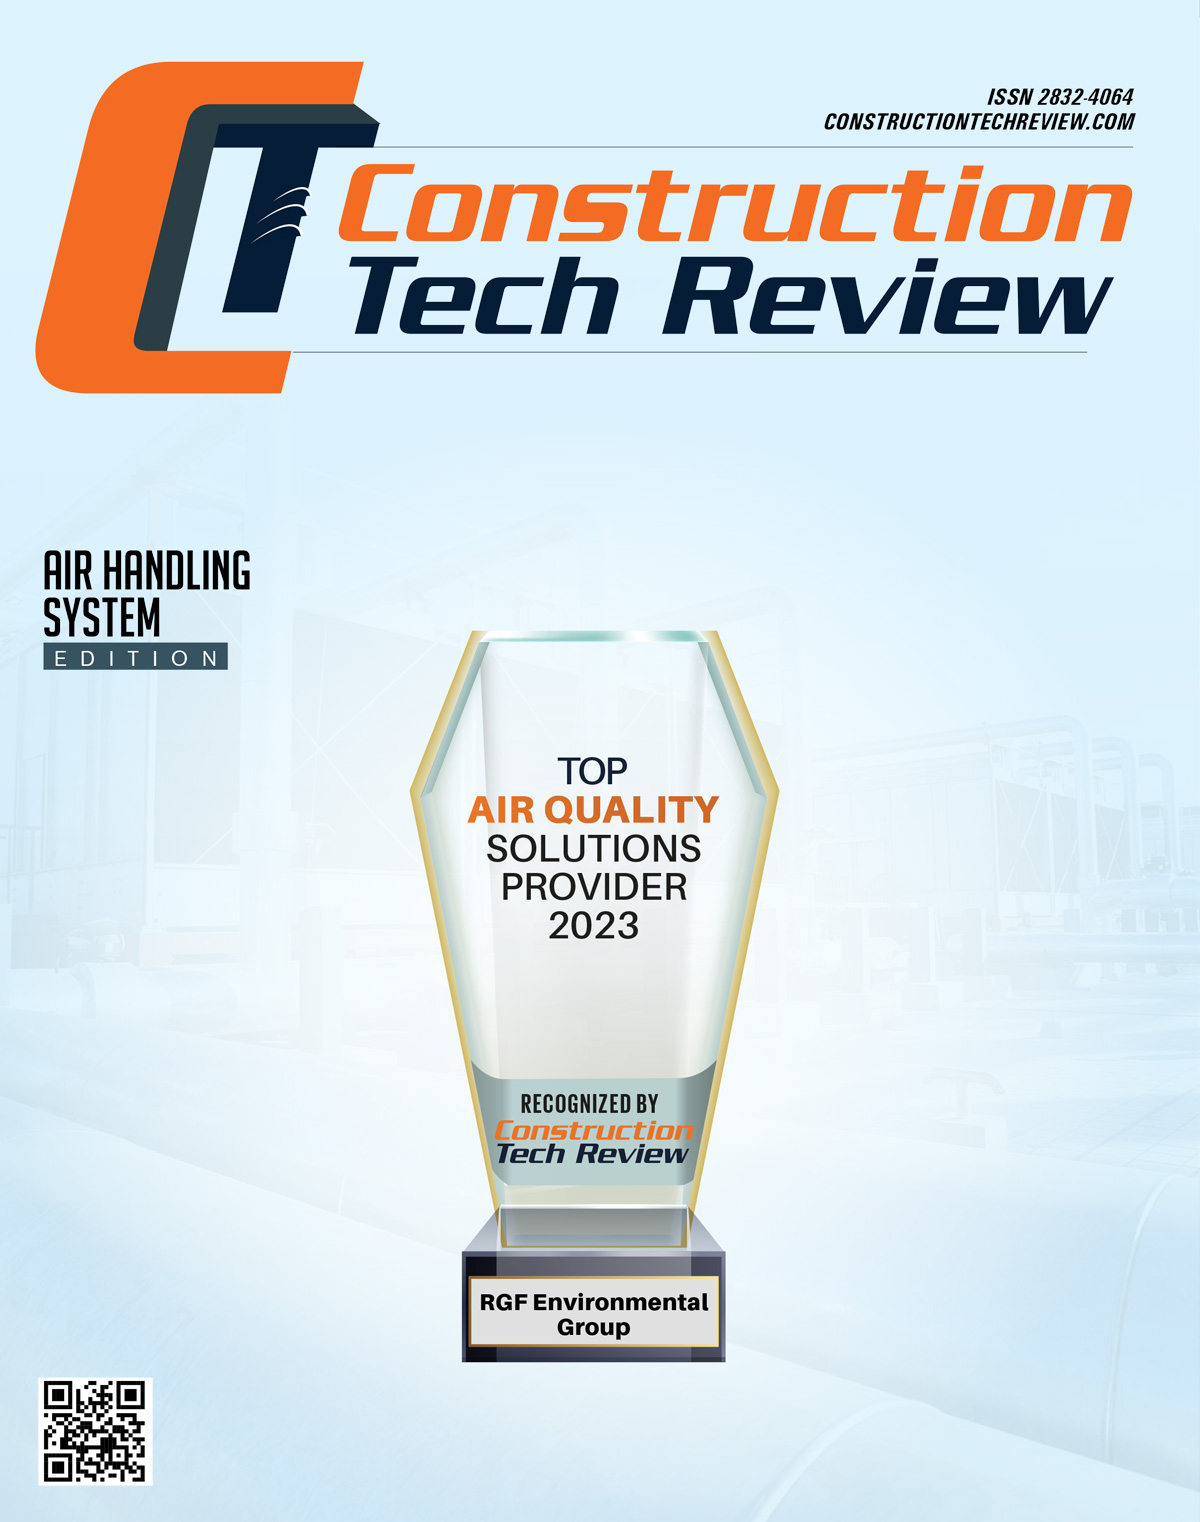 Tony Julian in Construction Tech Review